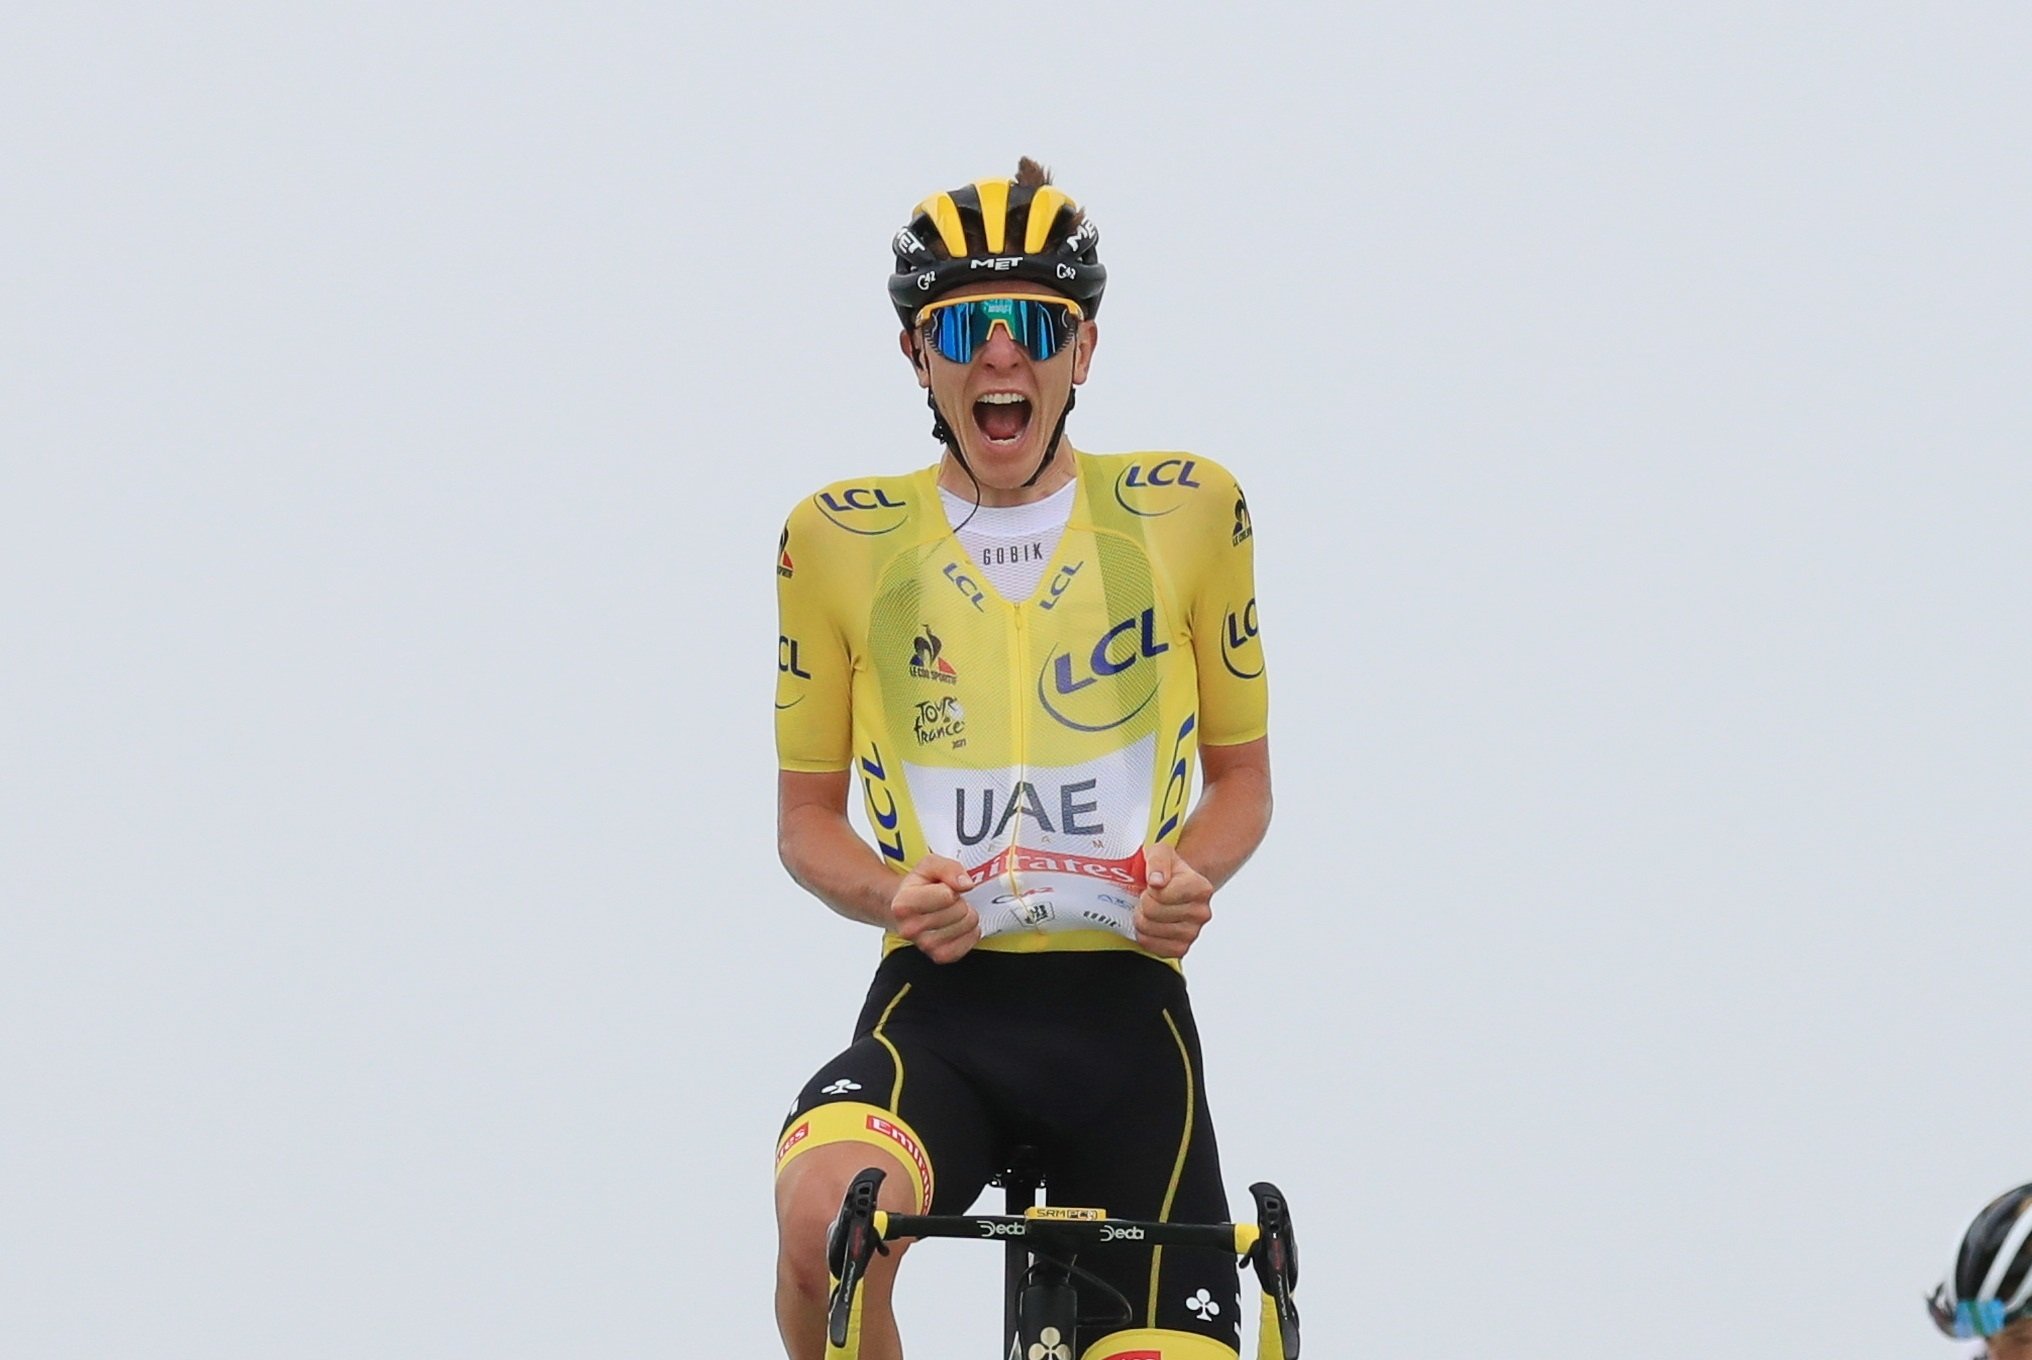 Pogacar no és humà: exhibició a l'etapa reina i sentència del Tour de França